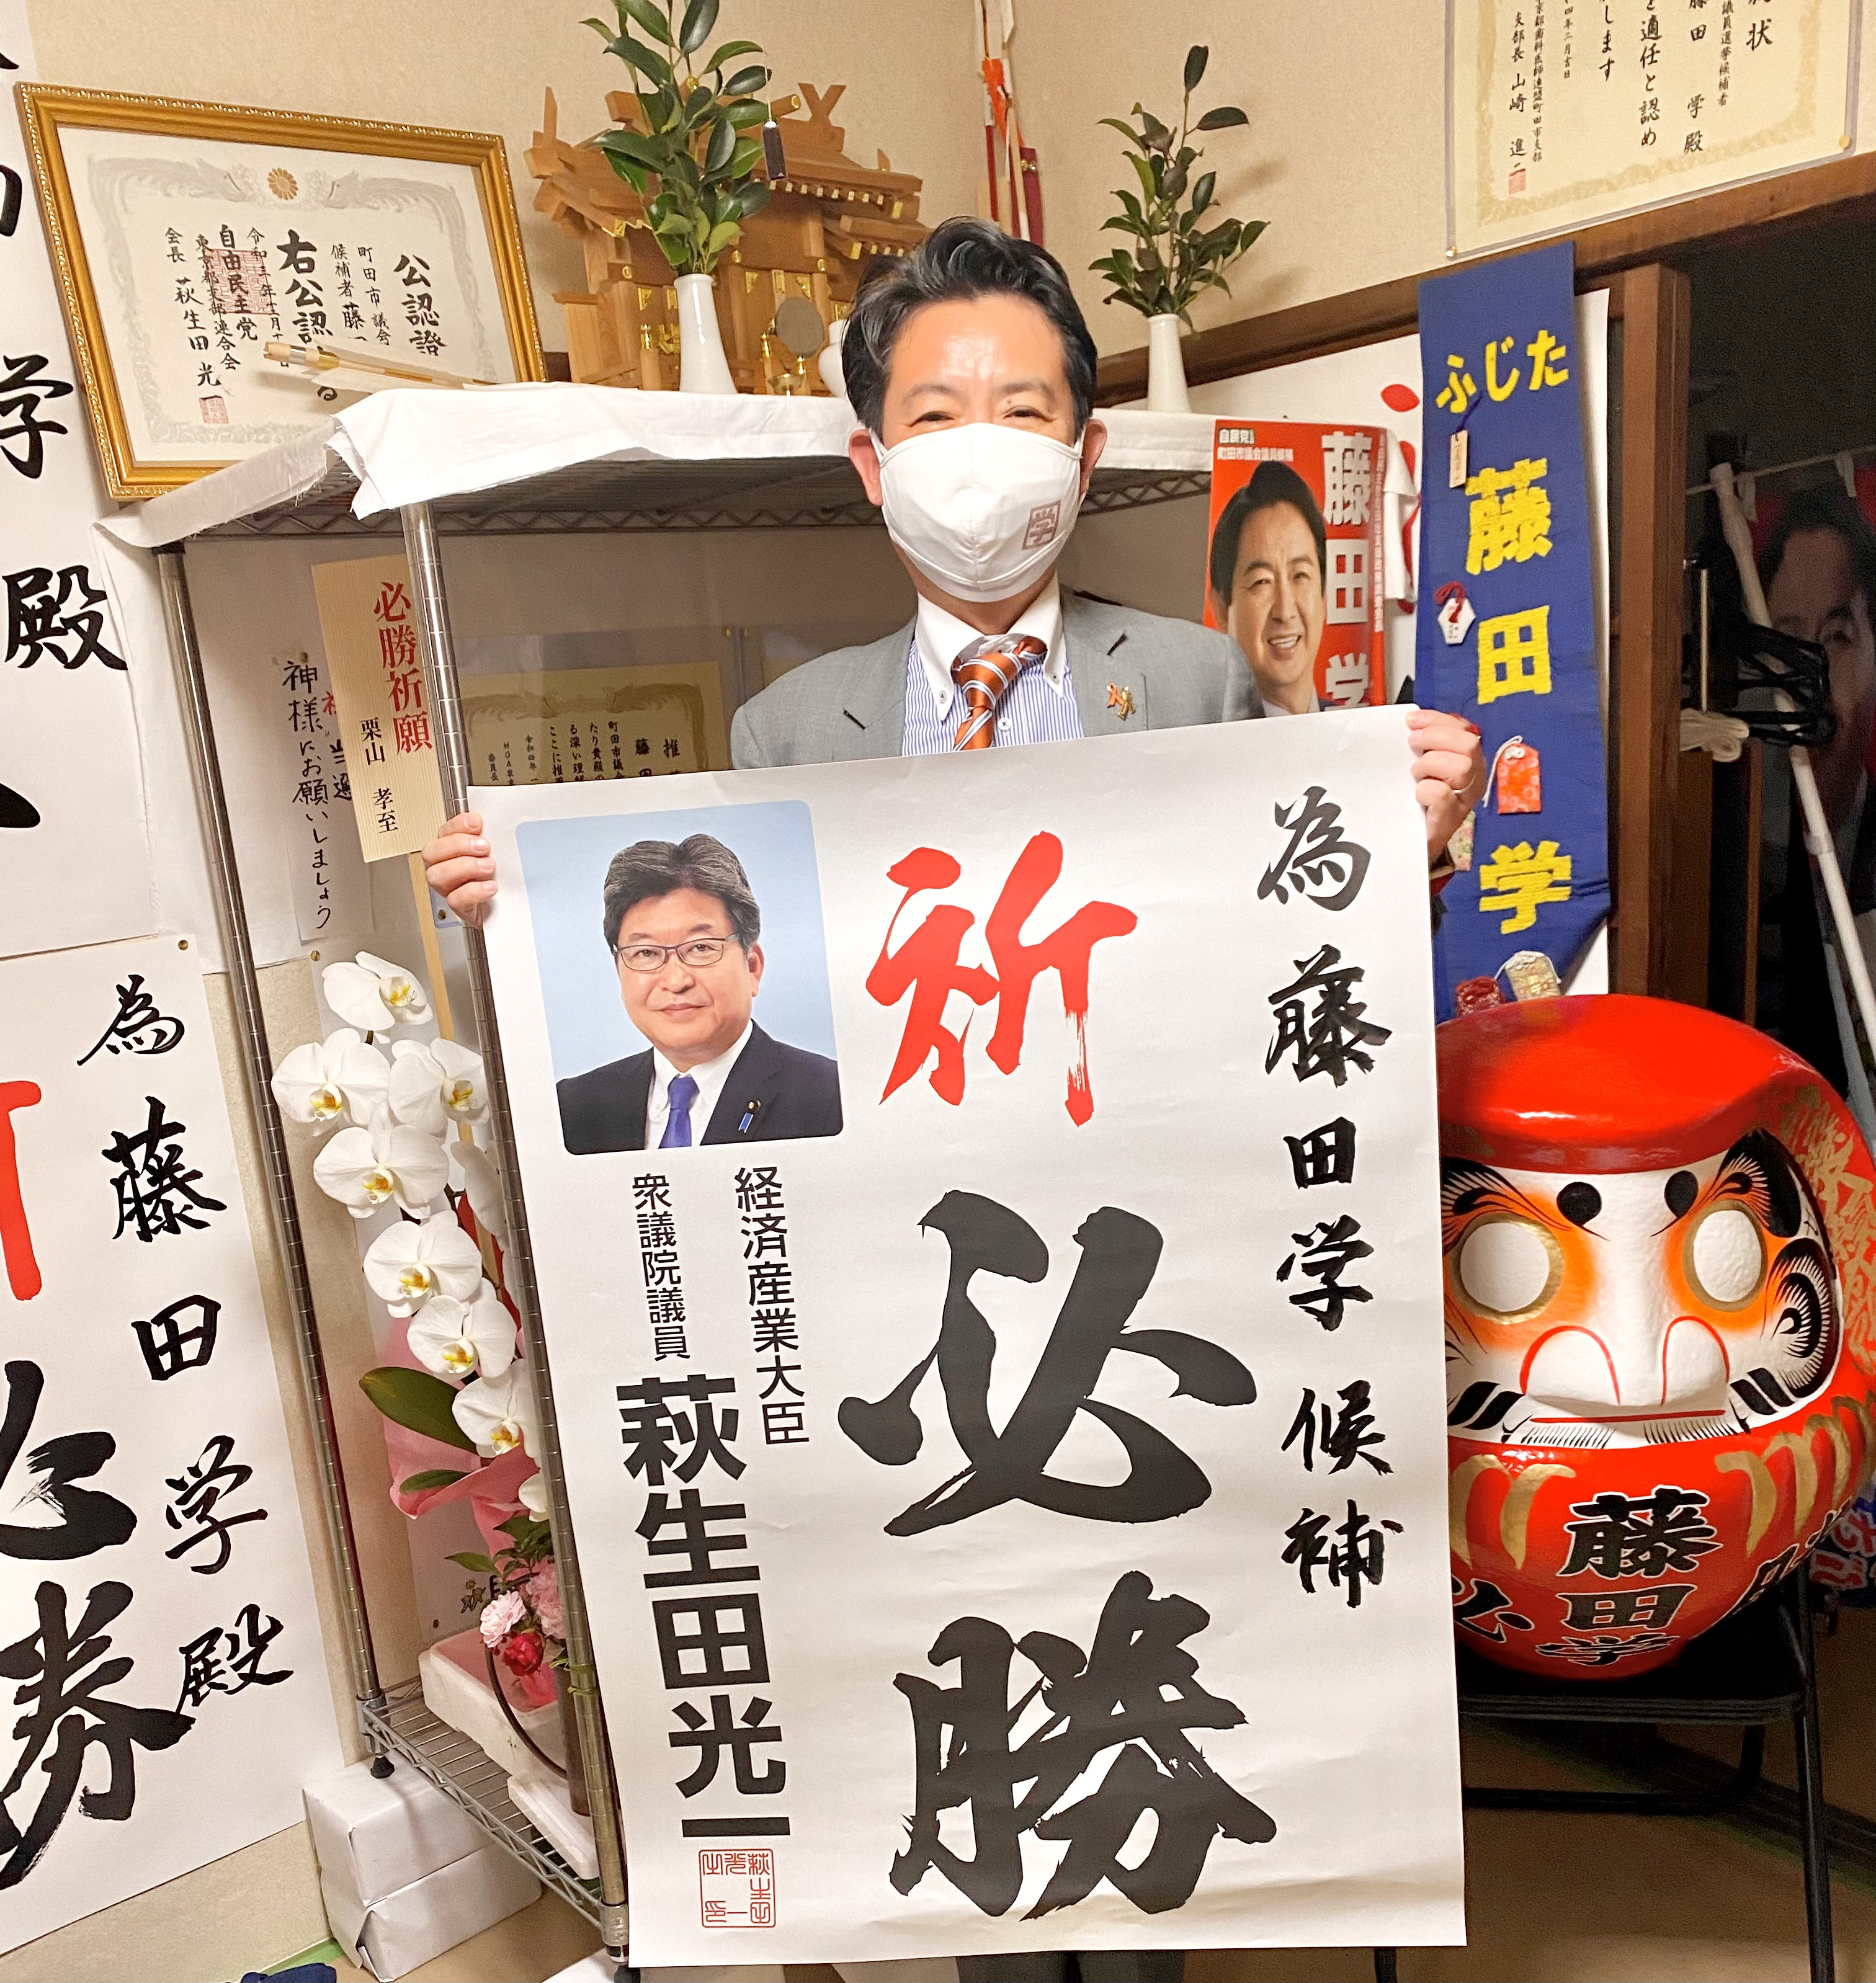 #萩生田光一 #自民党東京都連会長 #経済産業大臣 より、為書き、陣中見舞いただきました。  大竹秘書さん、ありがとうございました。  しっかり頑張ります！  #新しい未来 #children_fir